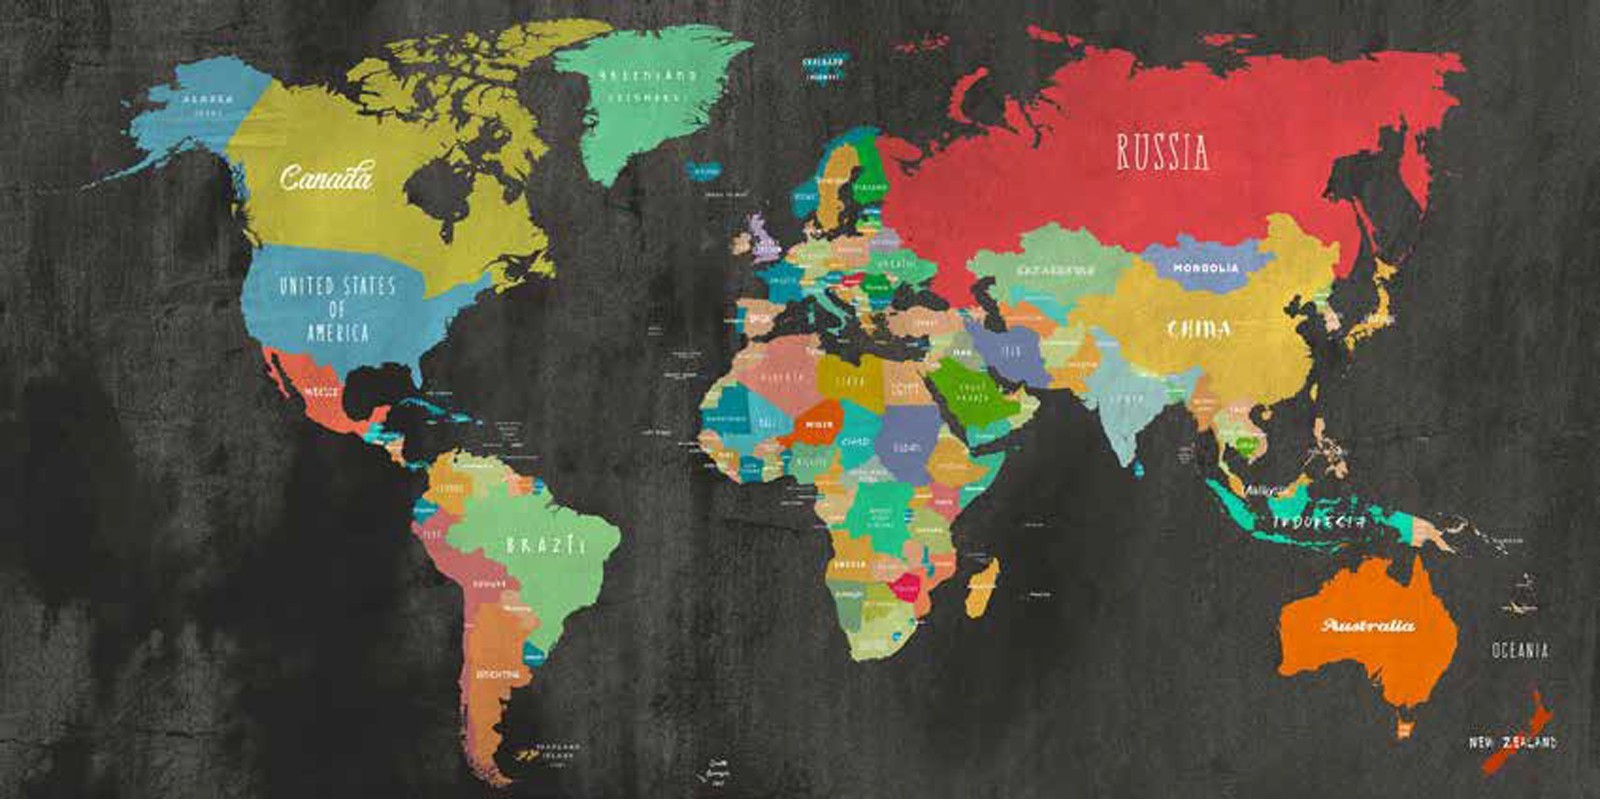 Joannoo - Modern Map of the World (chalkboard,detail)